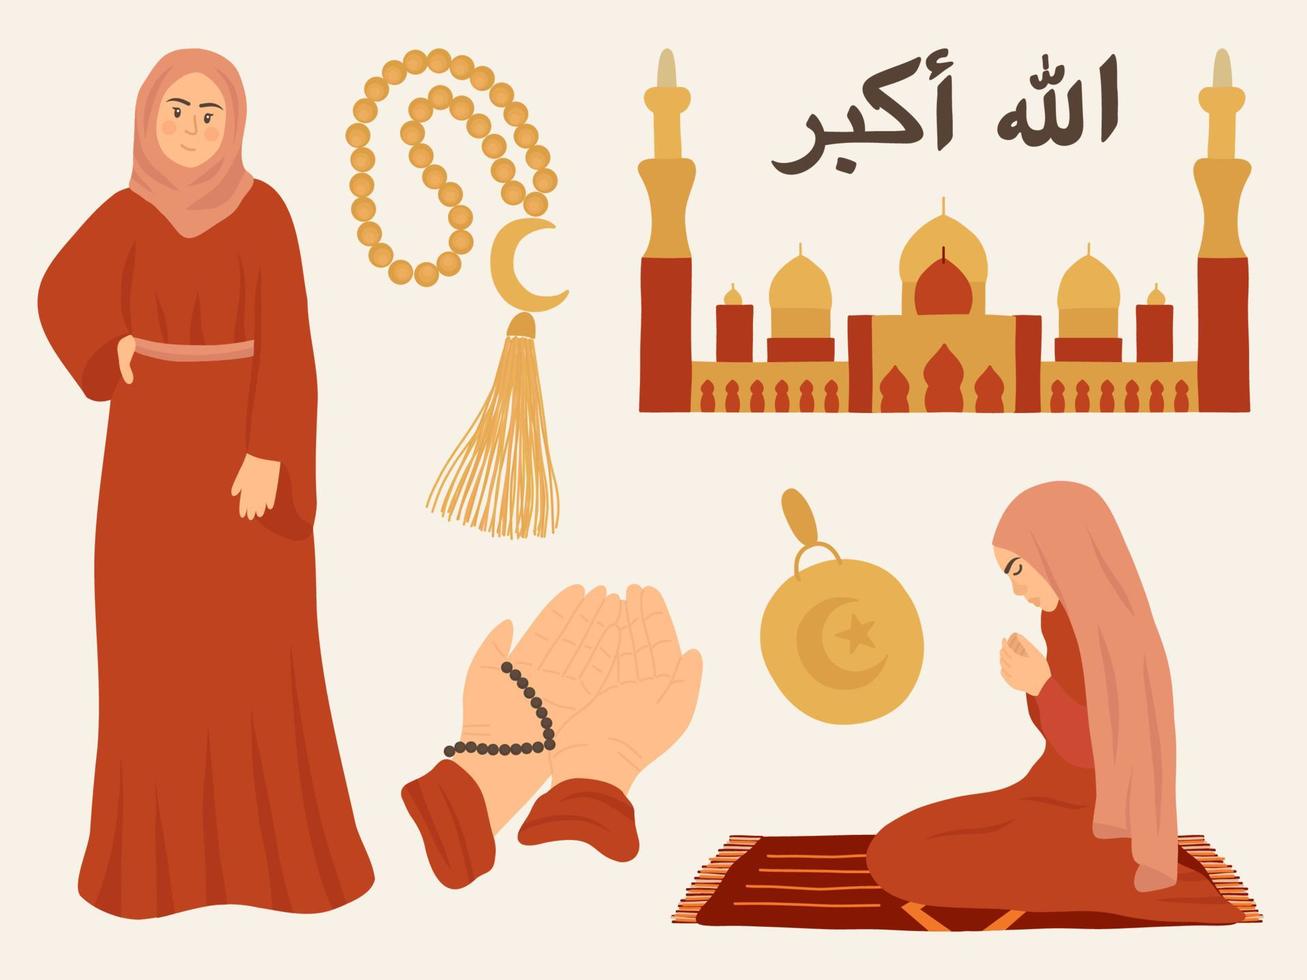 chicas musulmanas. oración musulmana, mezquita, ramadán. diversidad igualdad inclusión. caligrafía islámica. vector